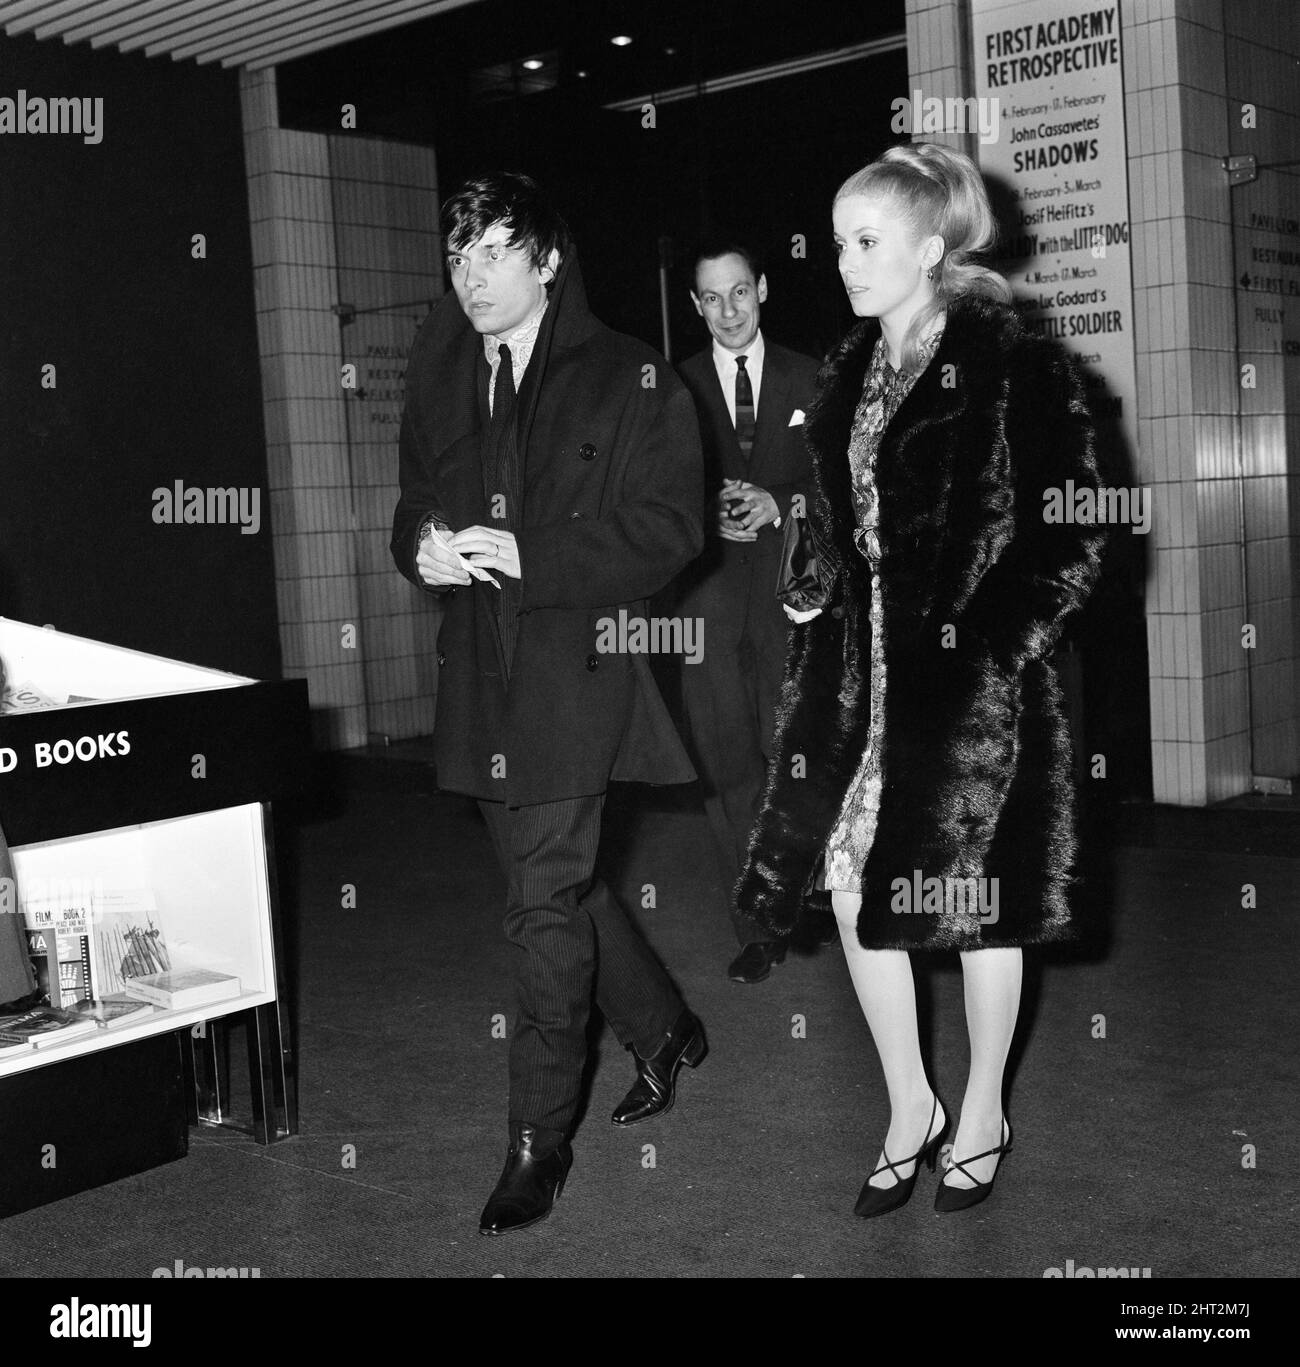 Catherine Deneuve, actrice et photographe de mode de mari David Bailey arrive au premier ministre de Londres du film Federico Fellini « Juliet of the Spirits » à l'Academy Cinema, Oxford Street, Londres. Ivo Jarosy, directeur du cinéma, est également en photo. 10th février 1966. Banque D'Images